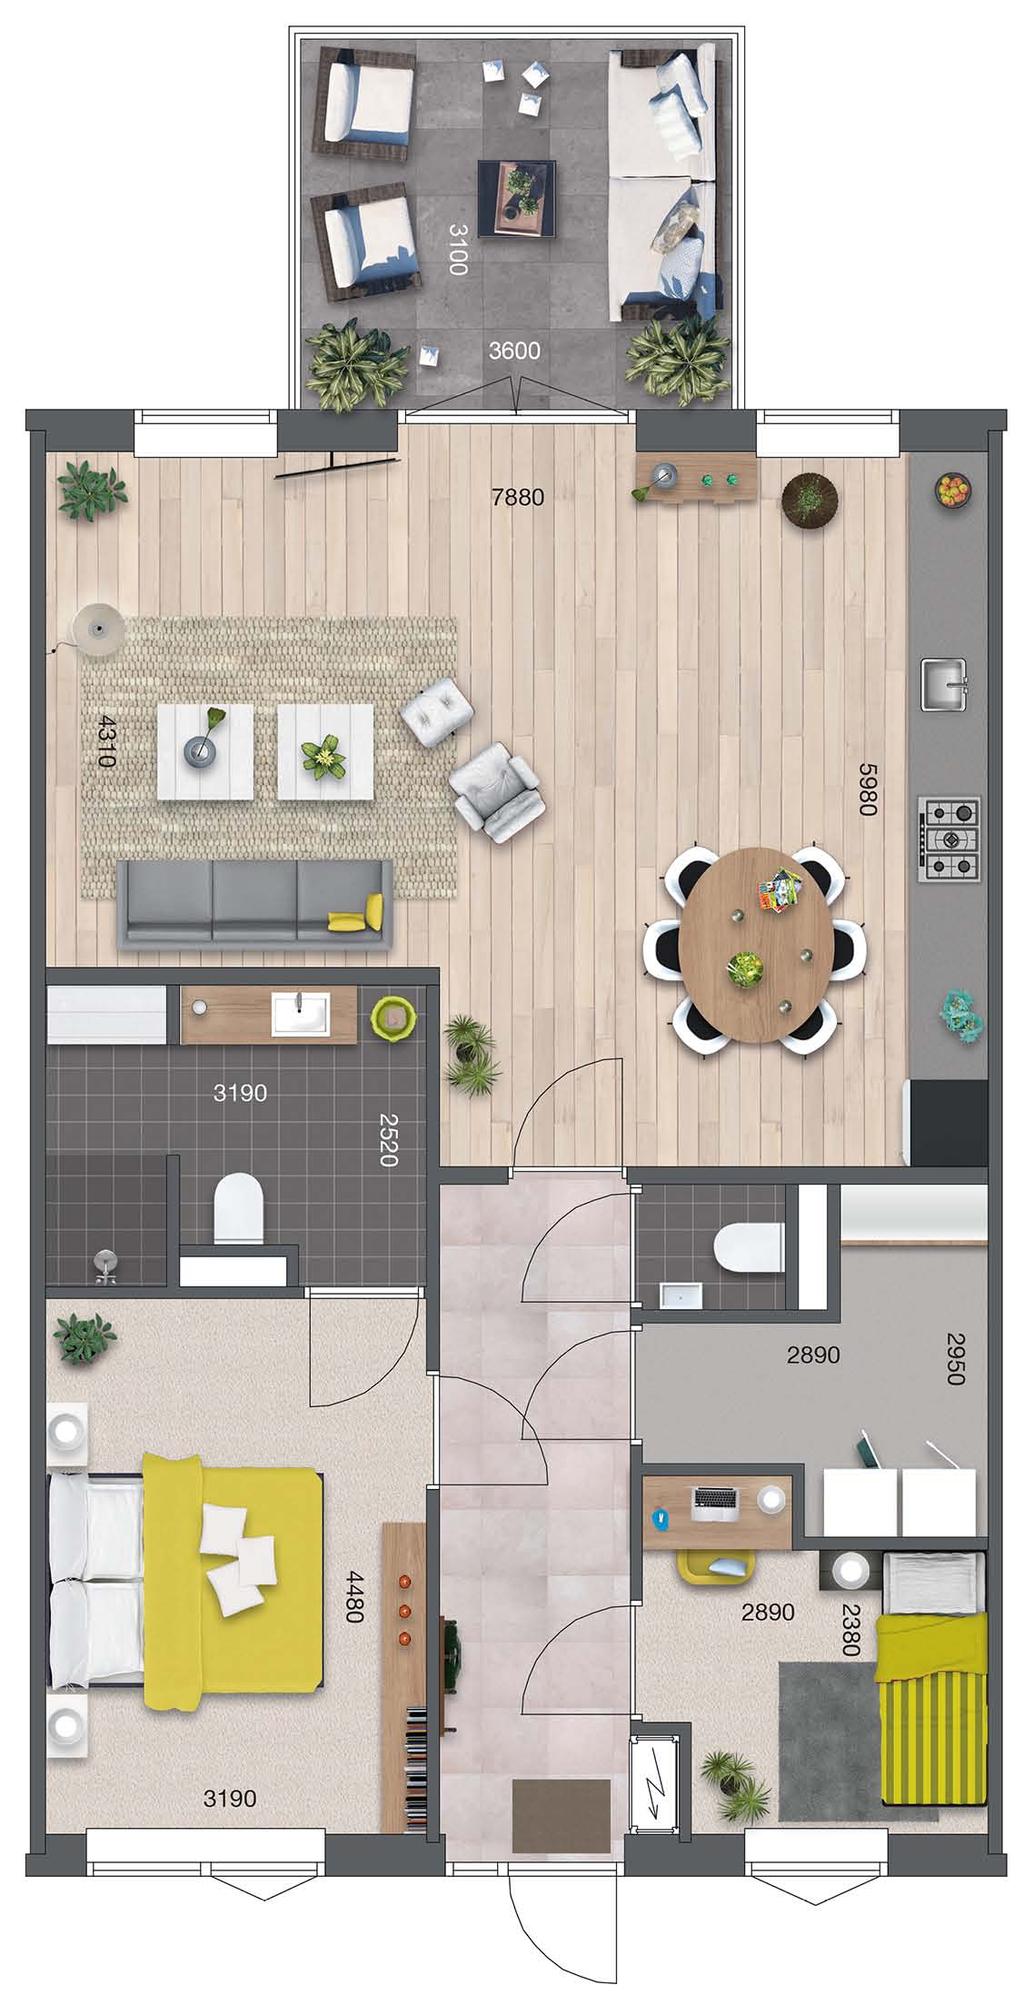 Mipatio - plattegrond Comfort appartement 3 100 m 2 Comfort appartement exclusief balkons en binnenberging. Uw eigen indelingswensen zijn bespreekbaar.